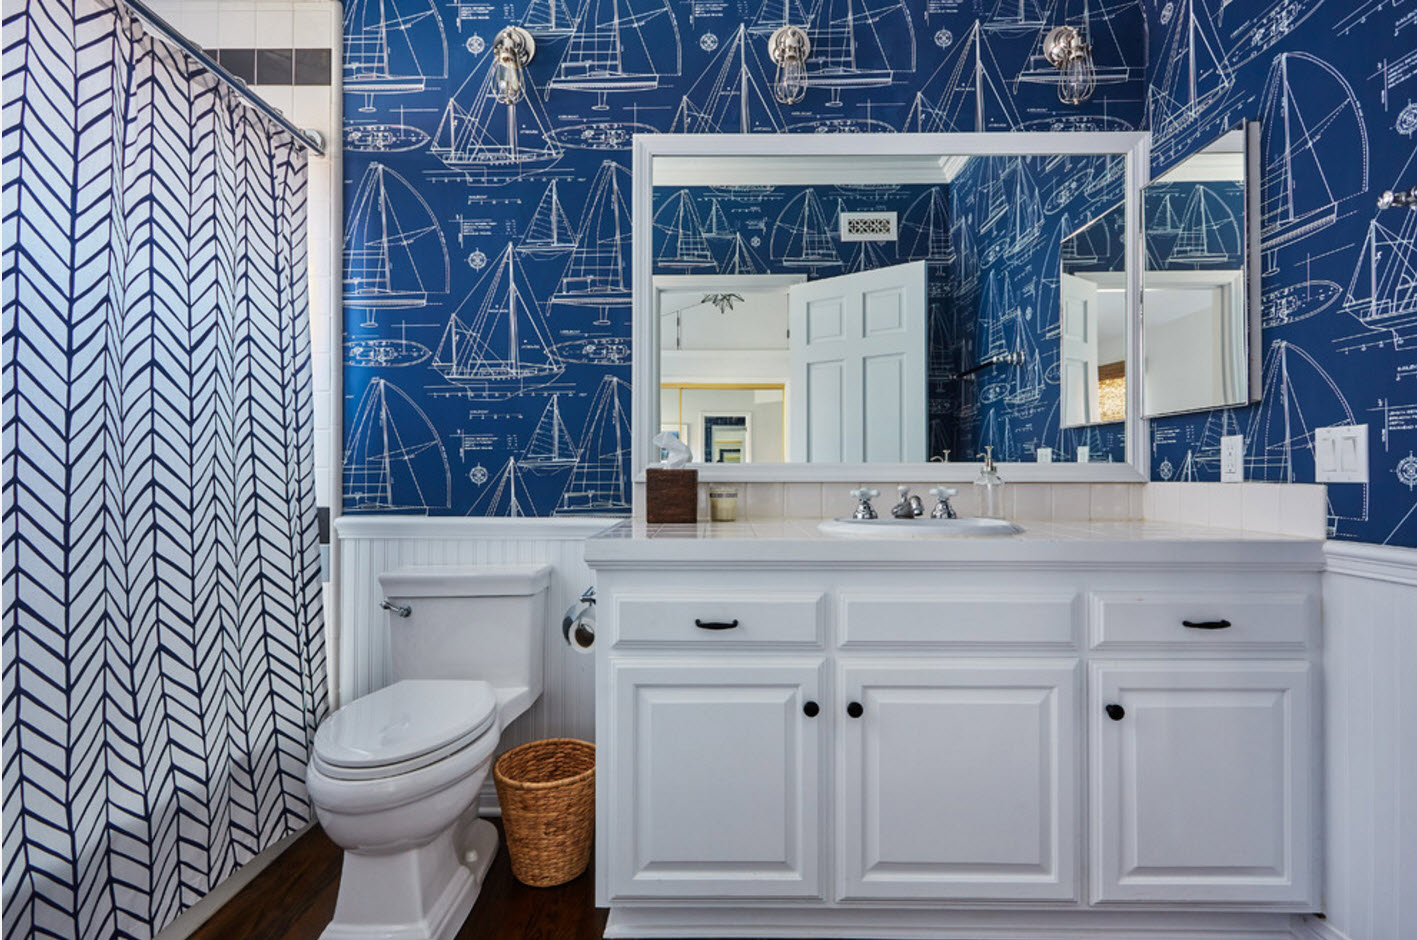 дизајн купатила у плавој и белој боји